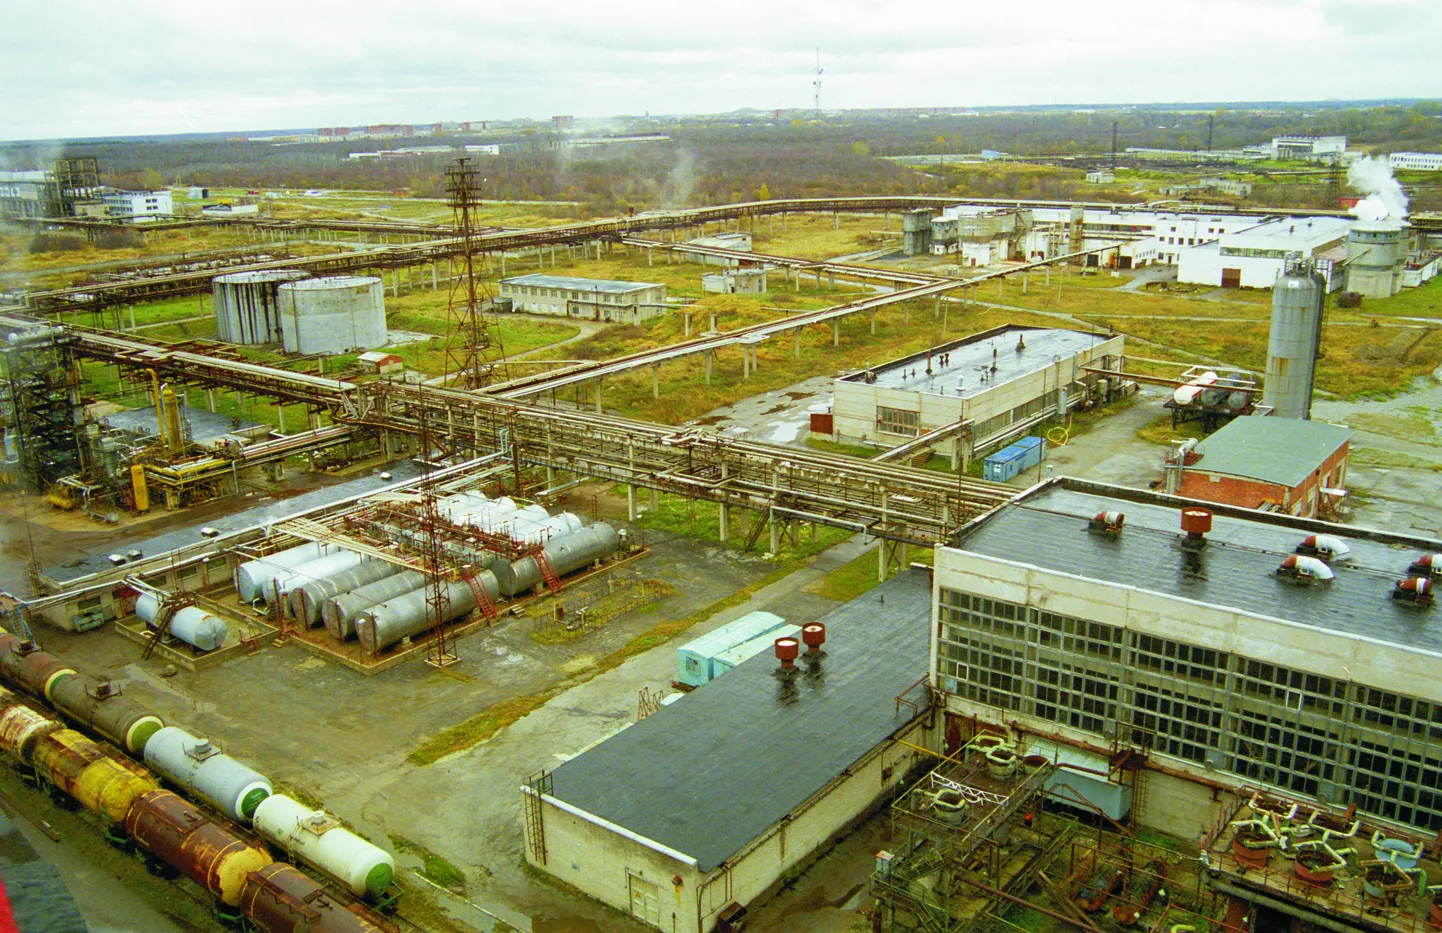 Метаноловый завод планировалось построить в Кохтла-Ярве на месте завода удобрений "Nitrofert".